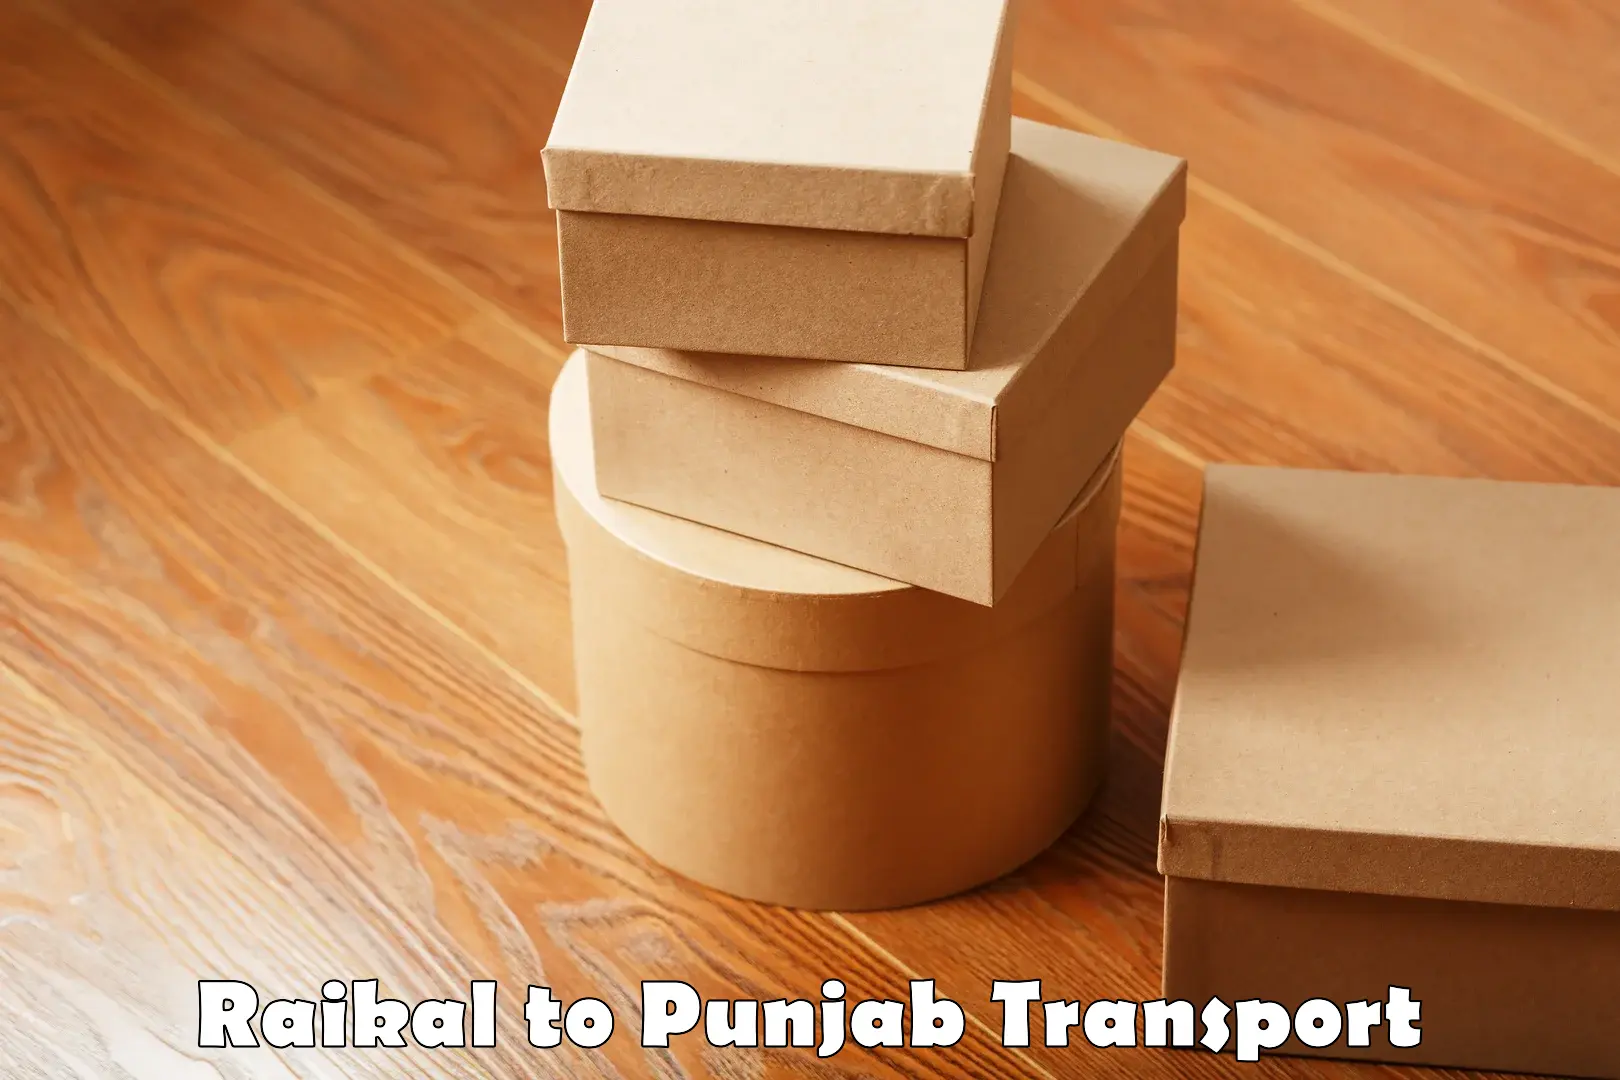 Two wheeler transport services Raikal to Punjab